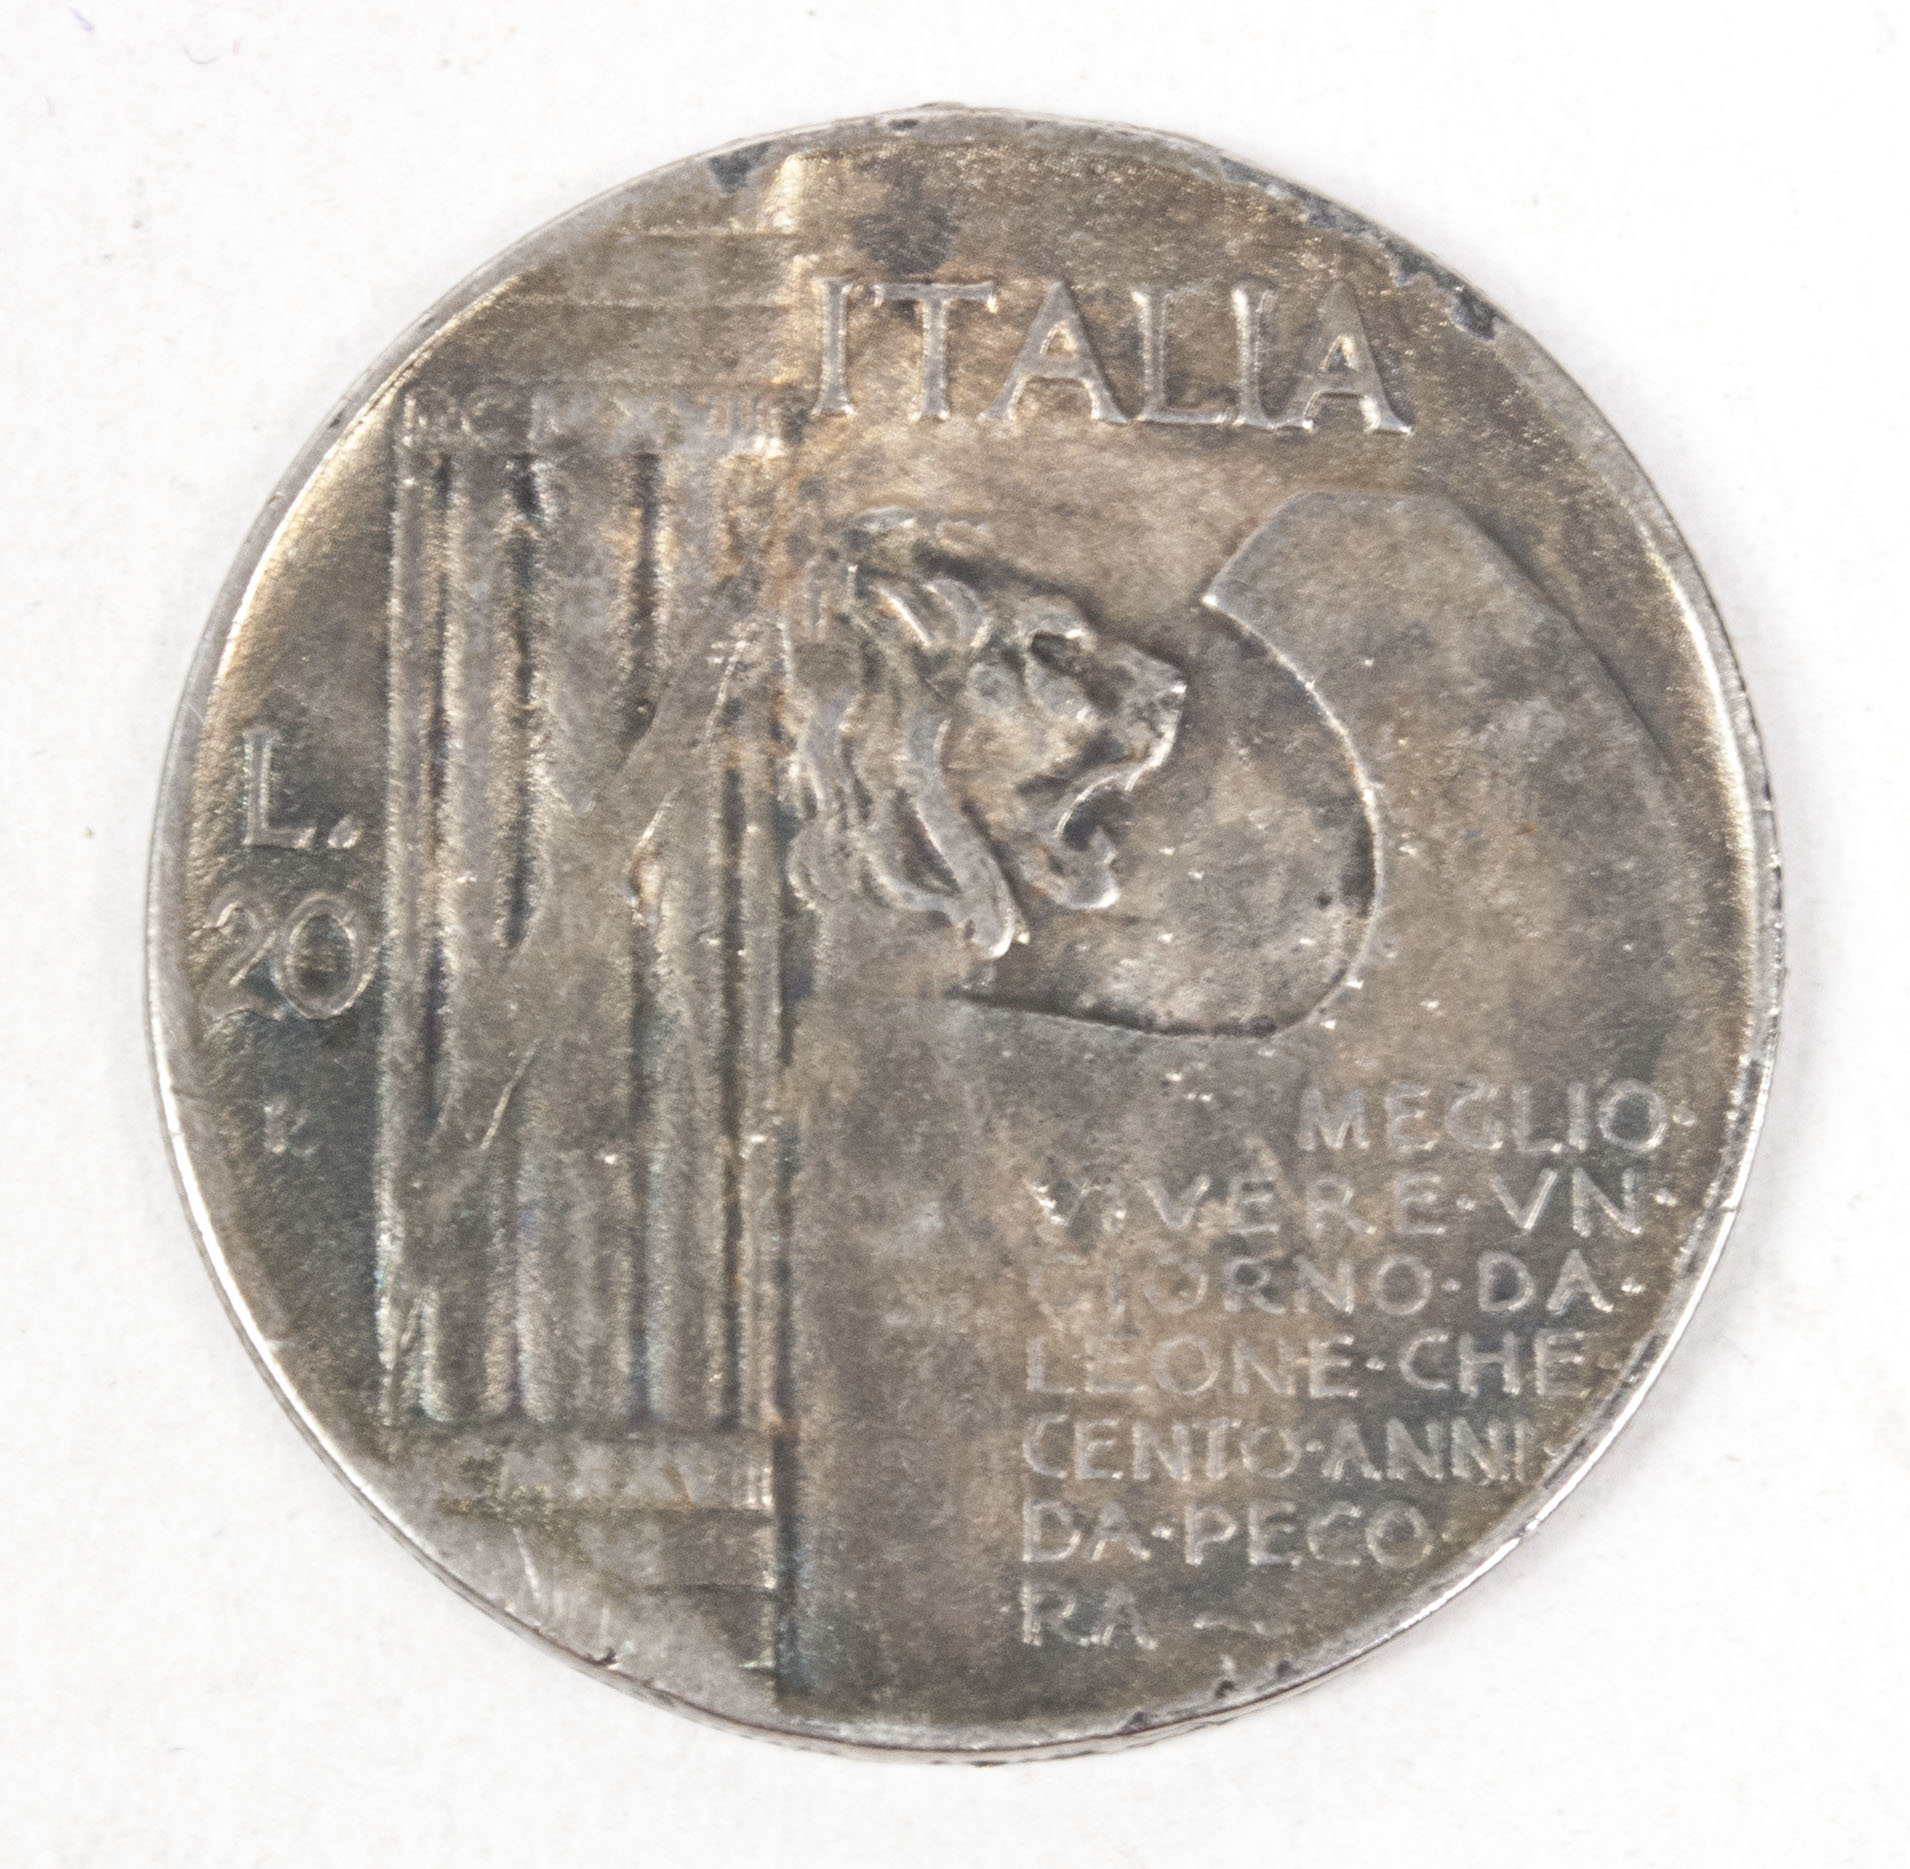 Mussolini MCMXLIII - 20 lire coin